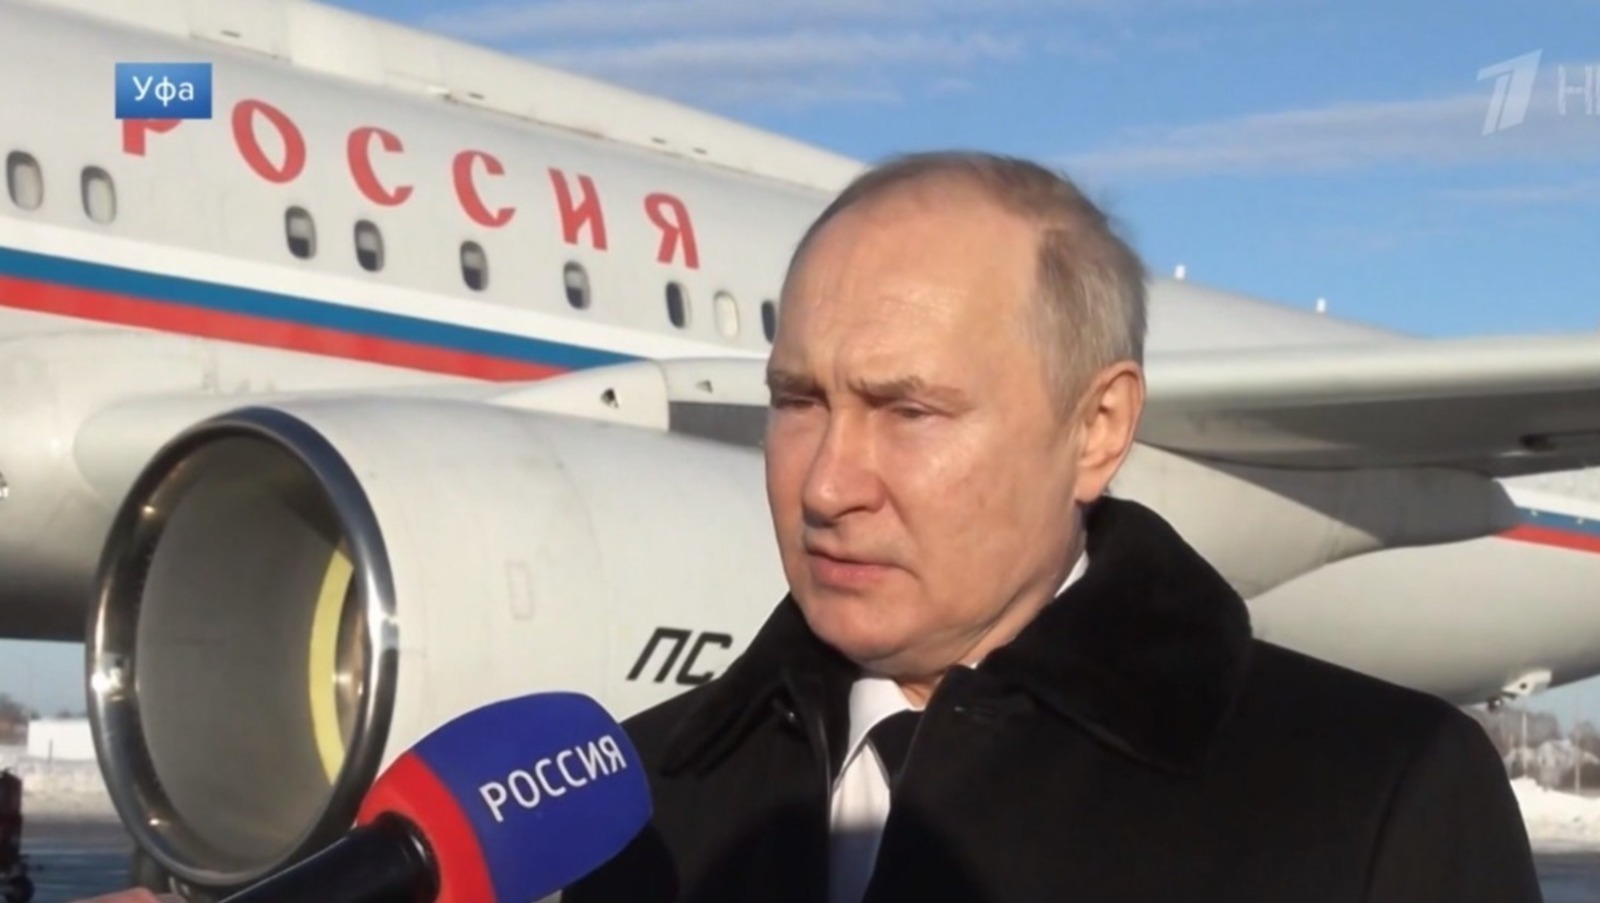 Эксперты высказали свое мнение про визит Влaдимира Путина в Башкирию